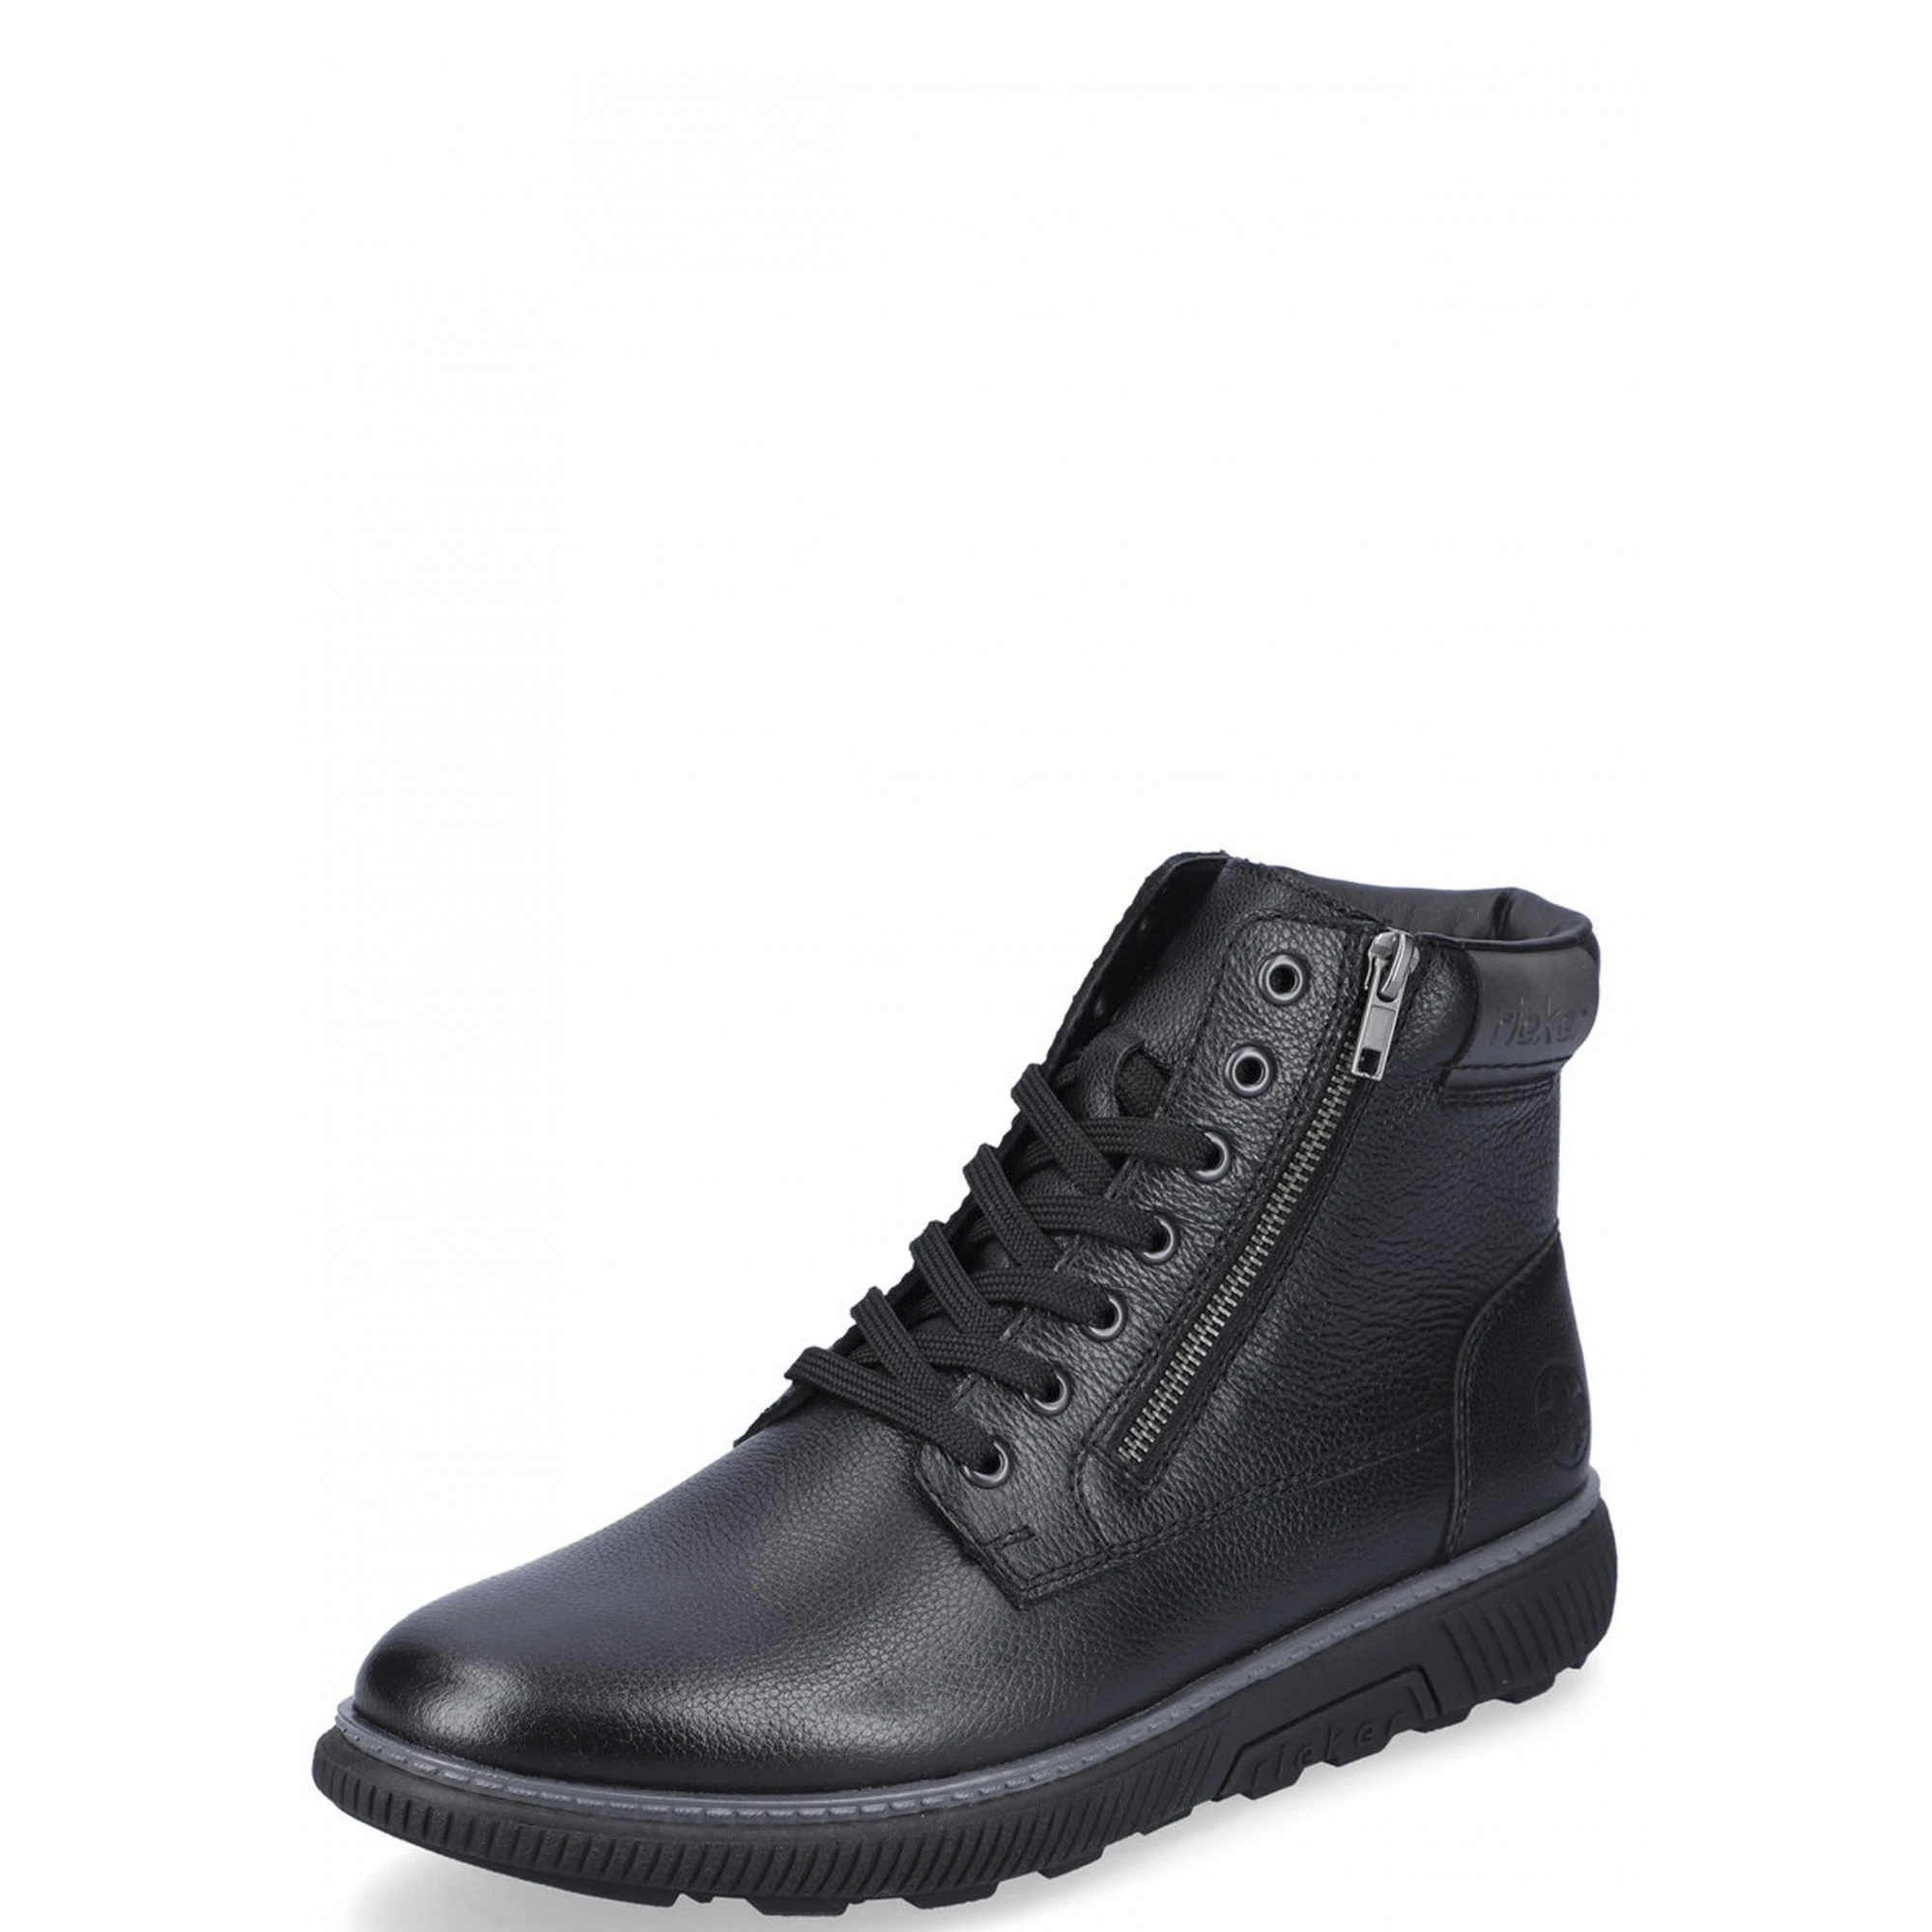 Relatieve grootte vastleggen Berg Vesuvius Rieker b3306 00v men's boots black genuine leather Winter, size 43| | -  AliExpress